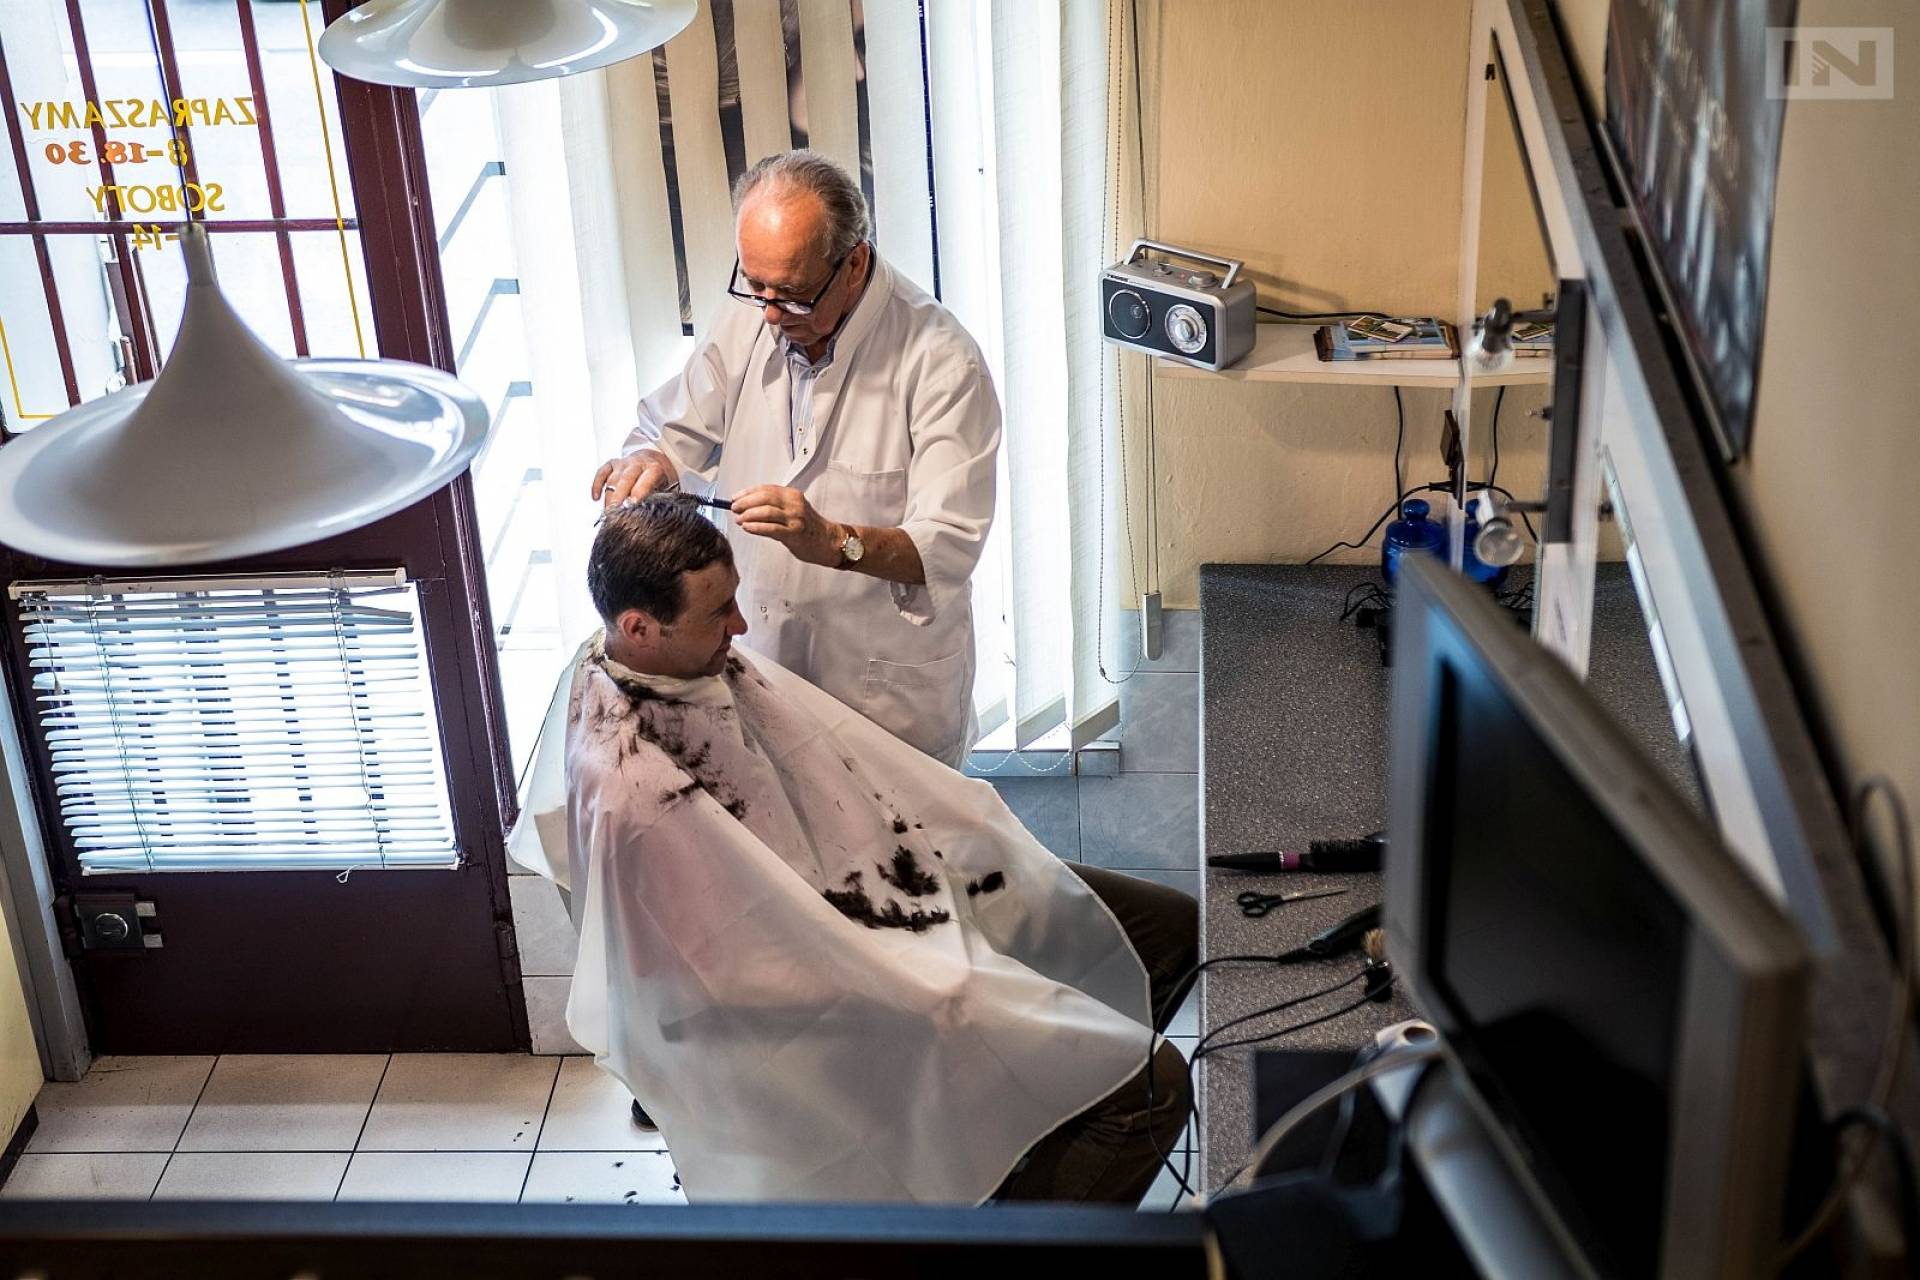 Najstarszy krakowski fryzjer: koszty rosną, ale o odejściu z zawodu nie myśli